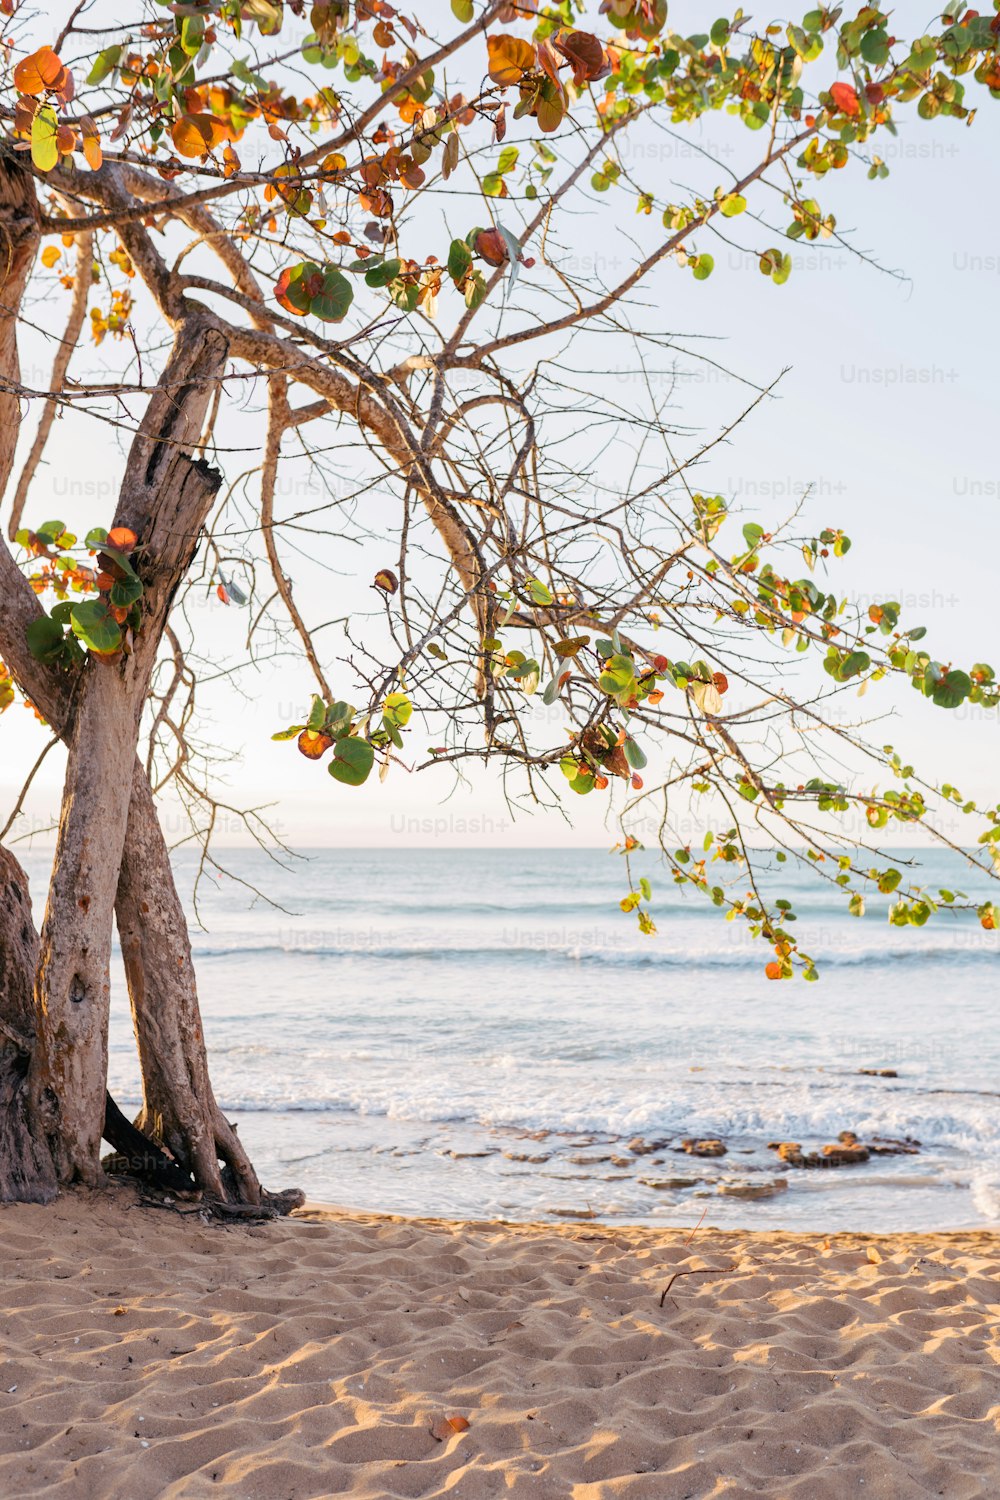 Un árbol en una playa con un cuerpo de agua en el fondo